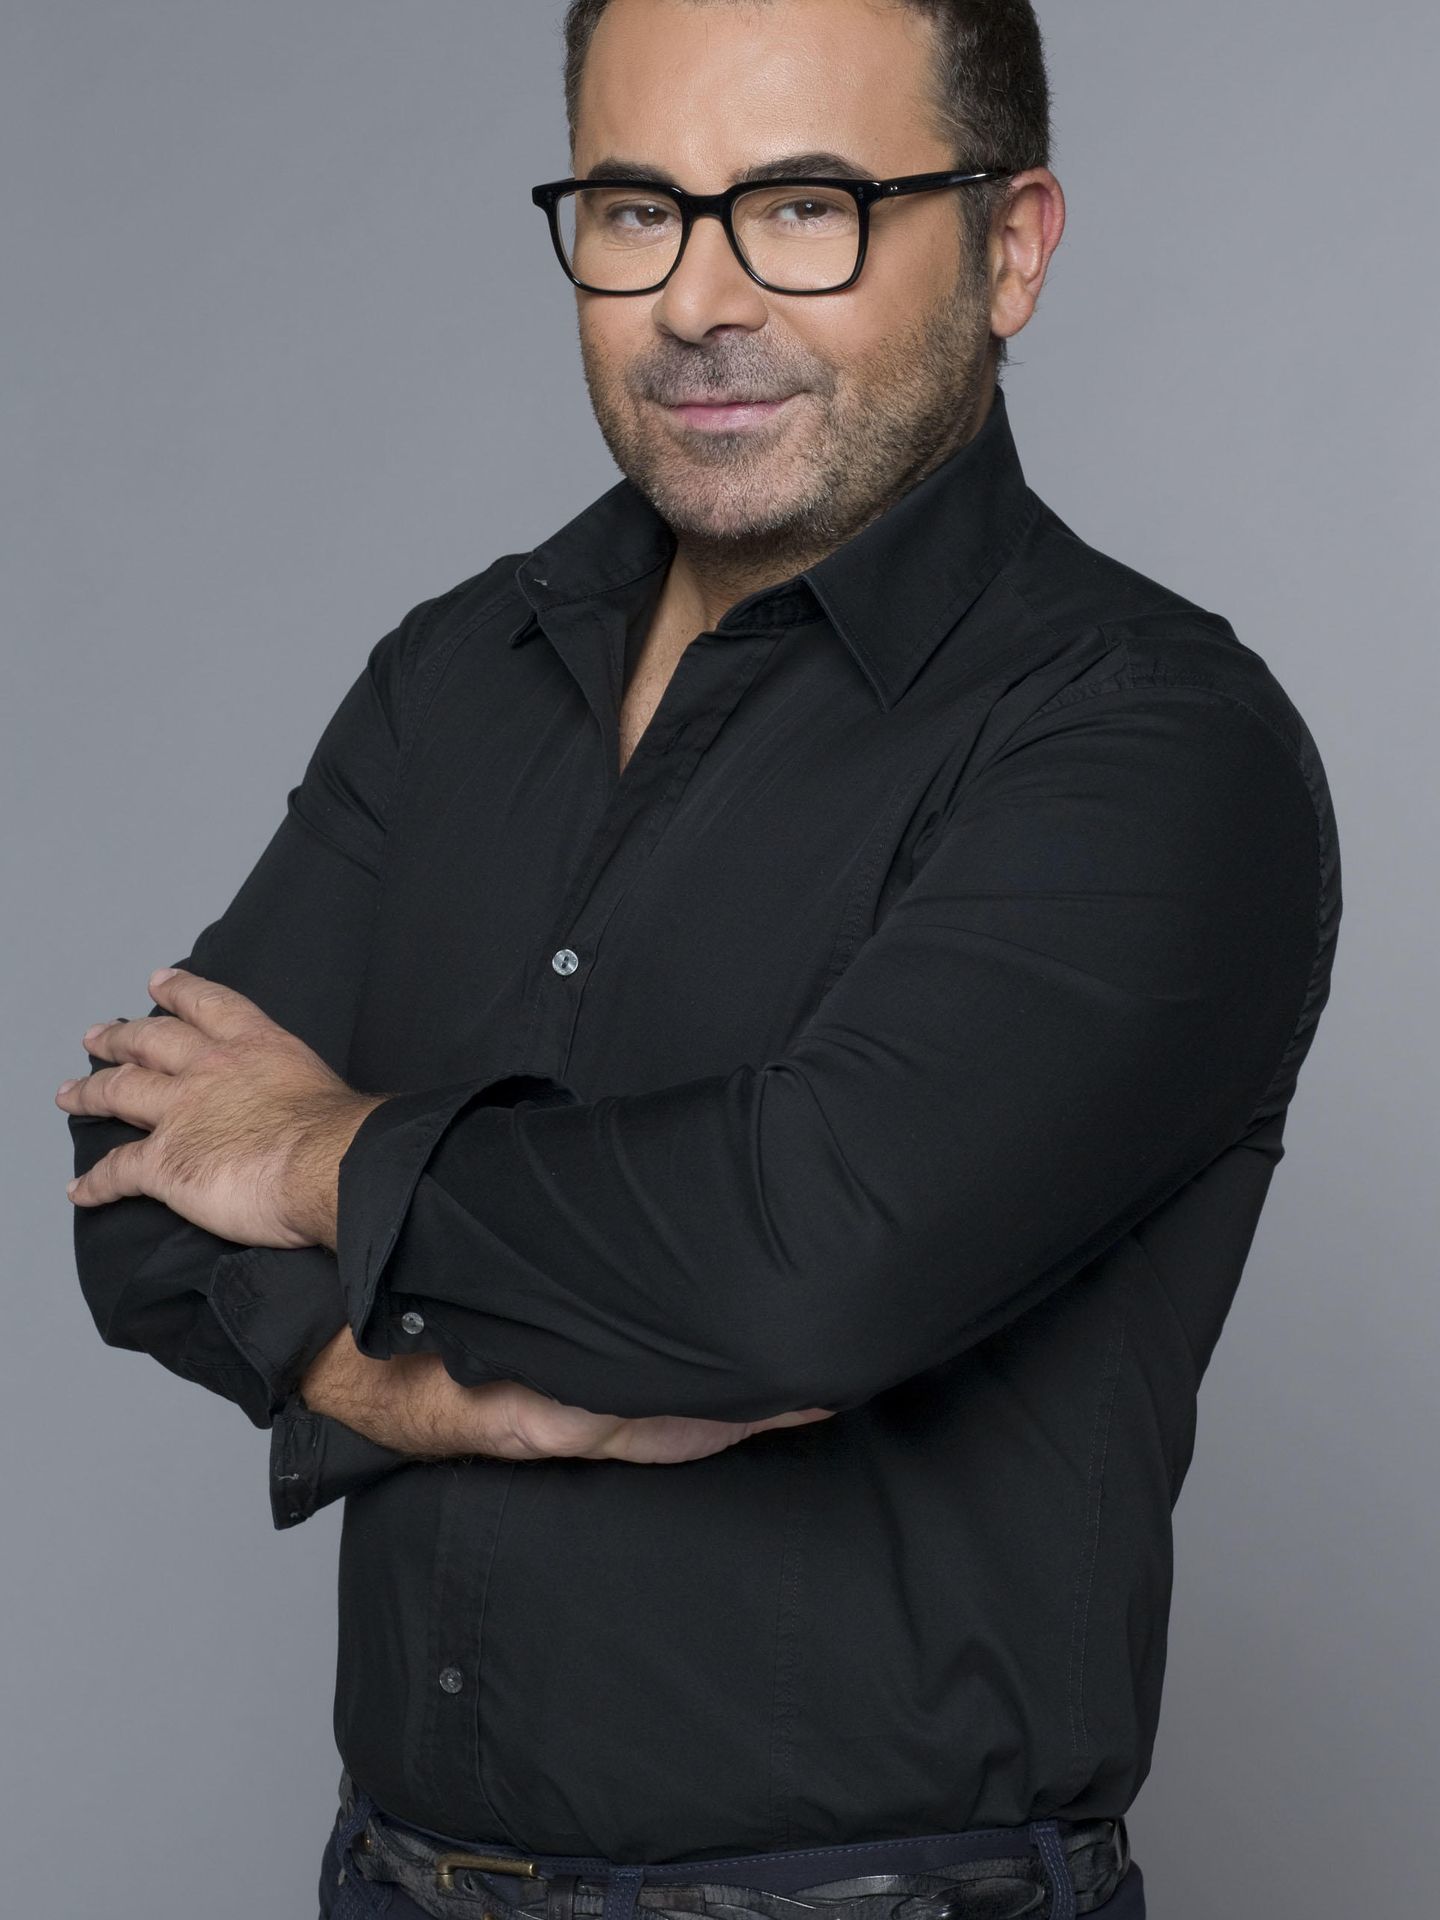 Jorge Javier Vázquez (Telecinco)